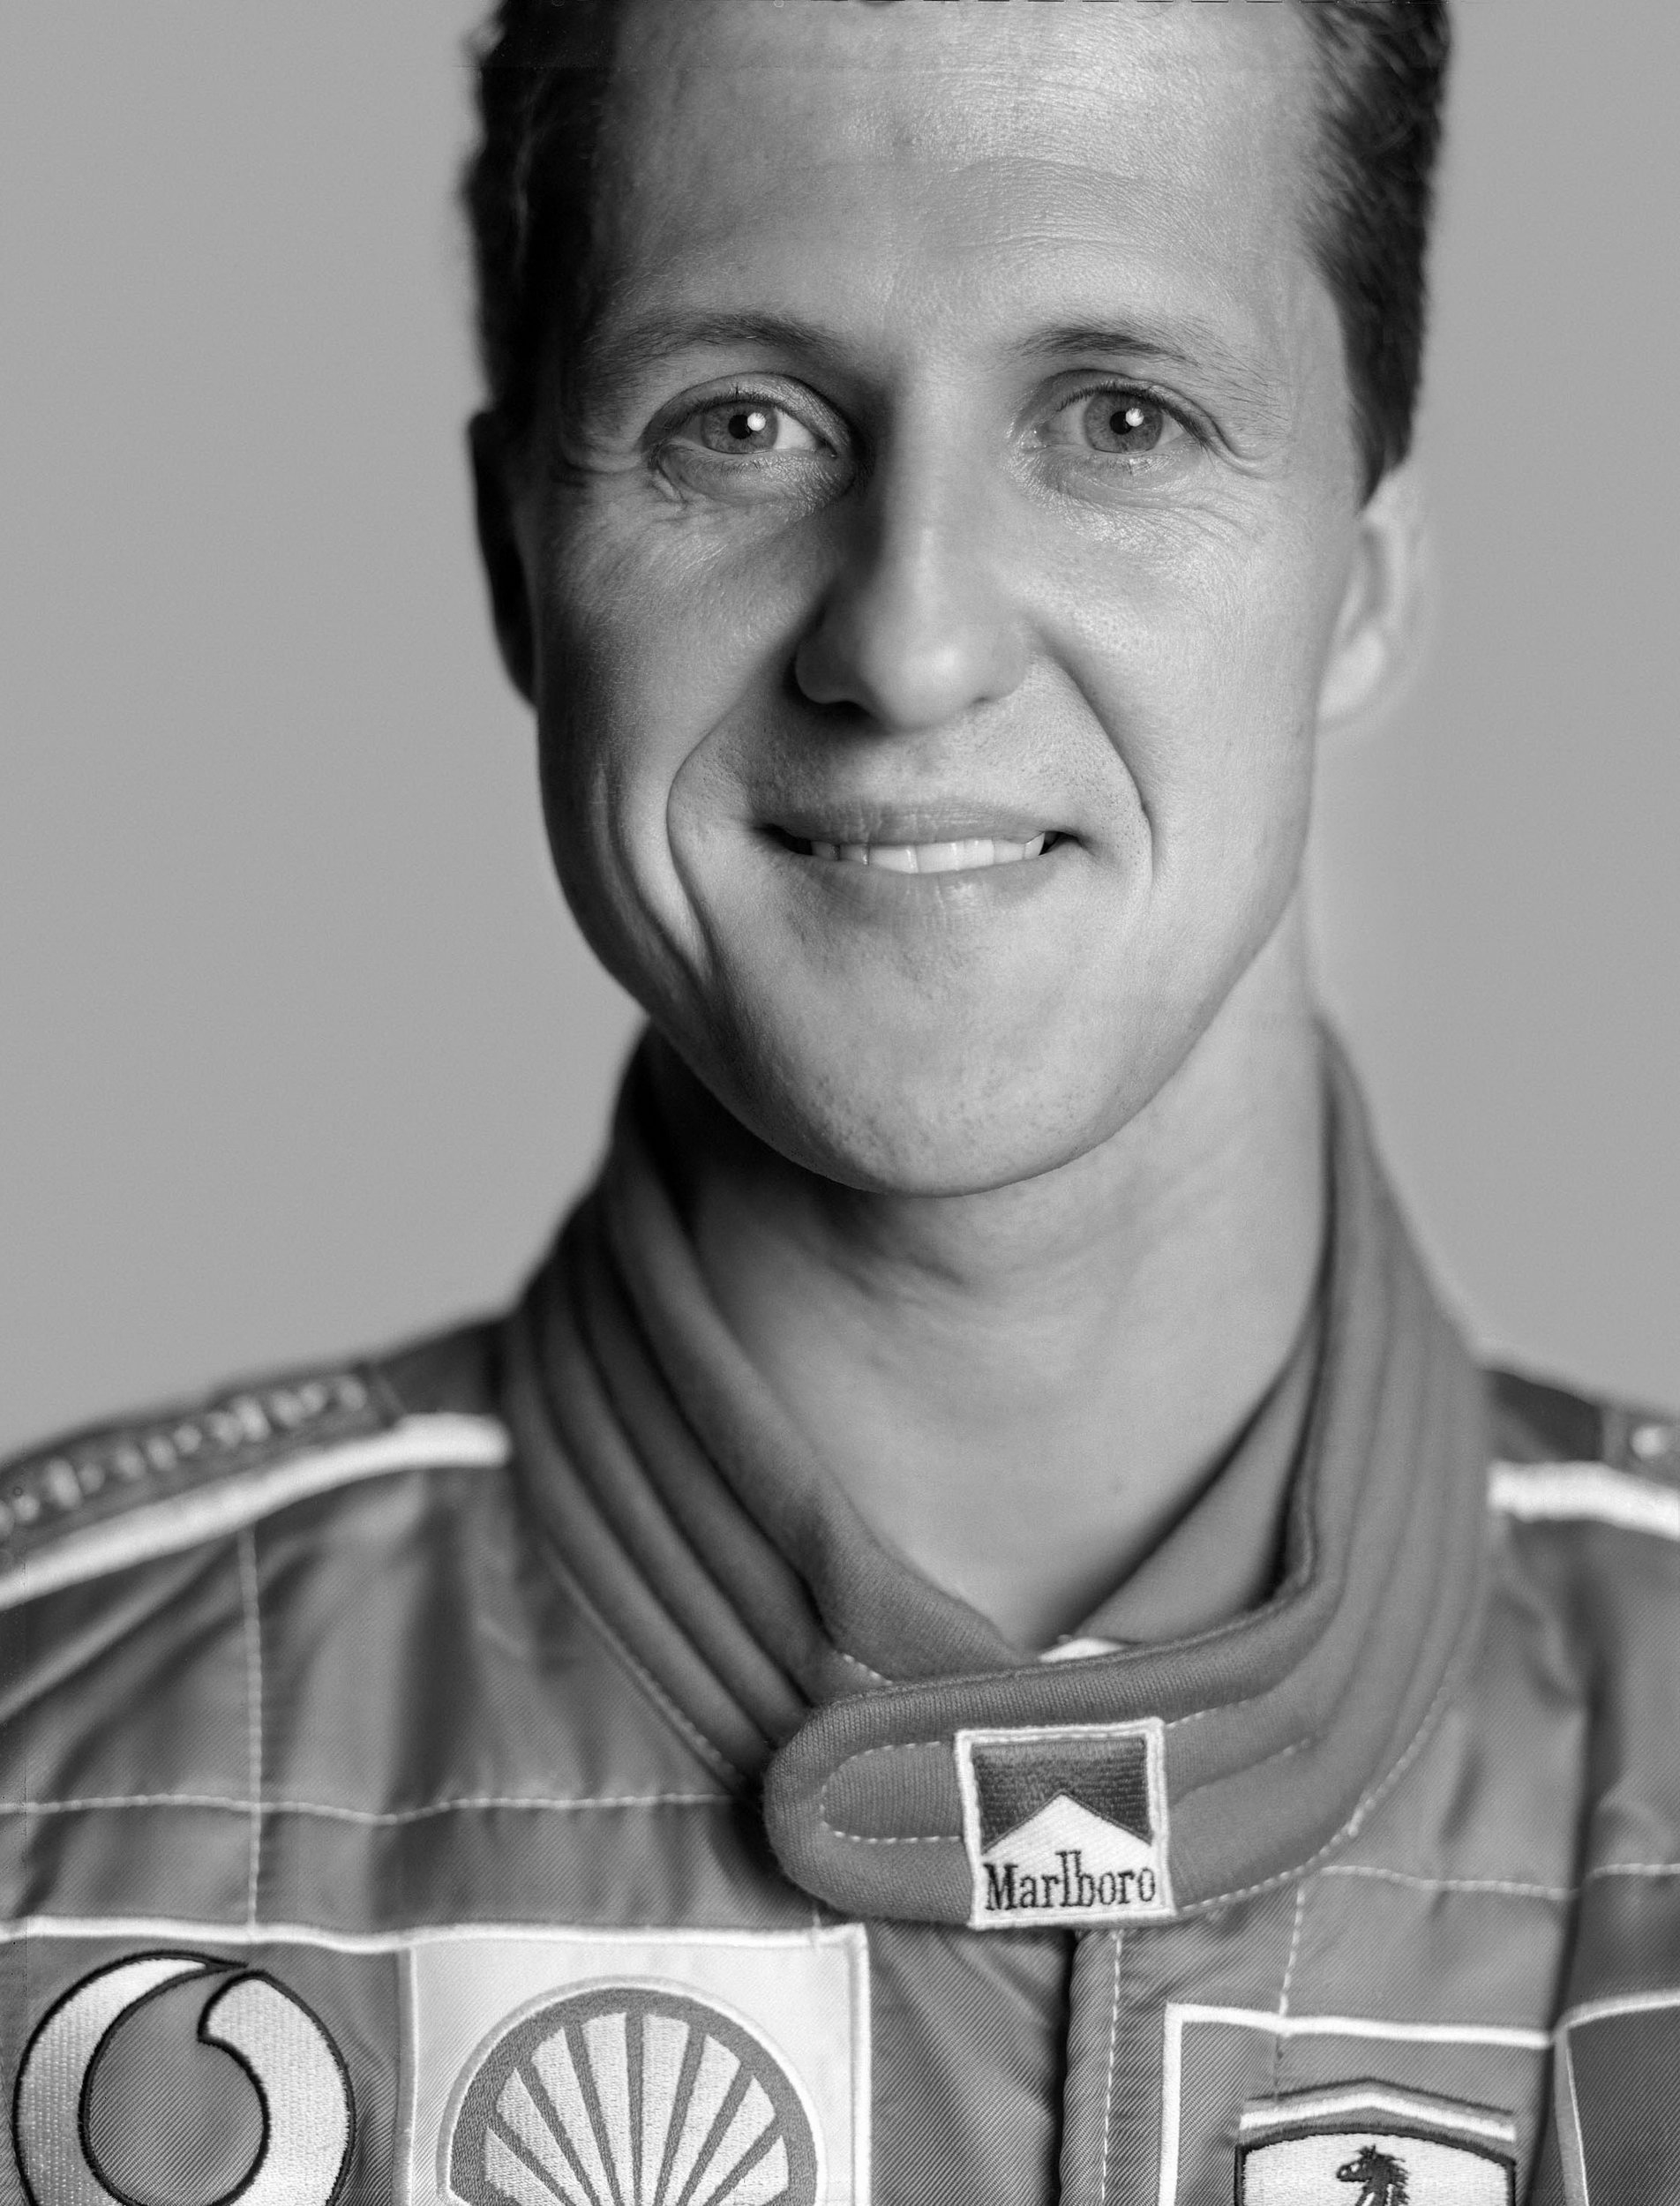 Michael Schumacher - Images Colection